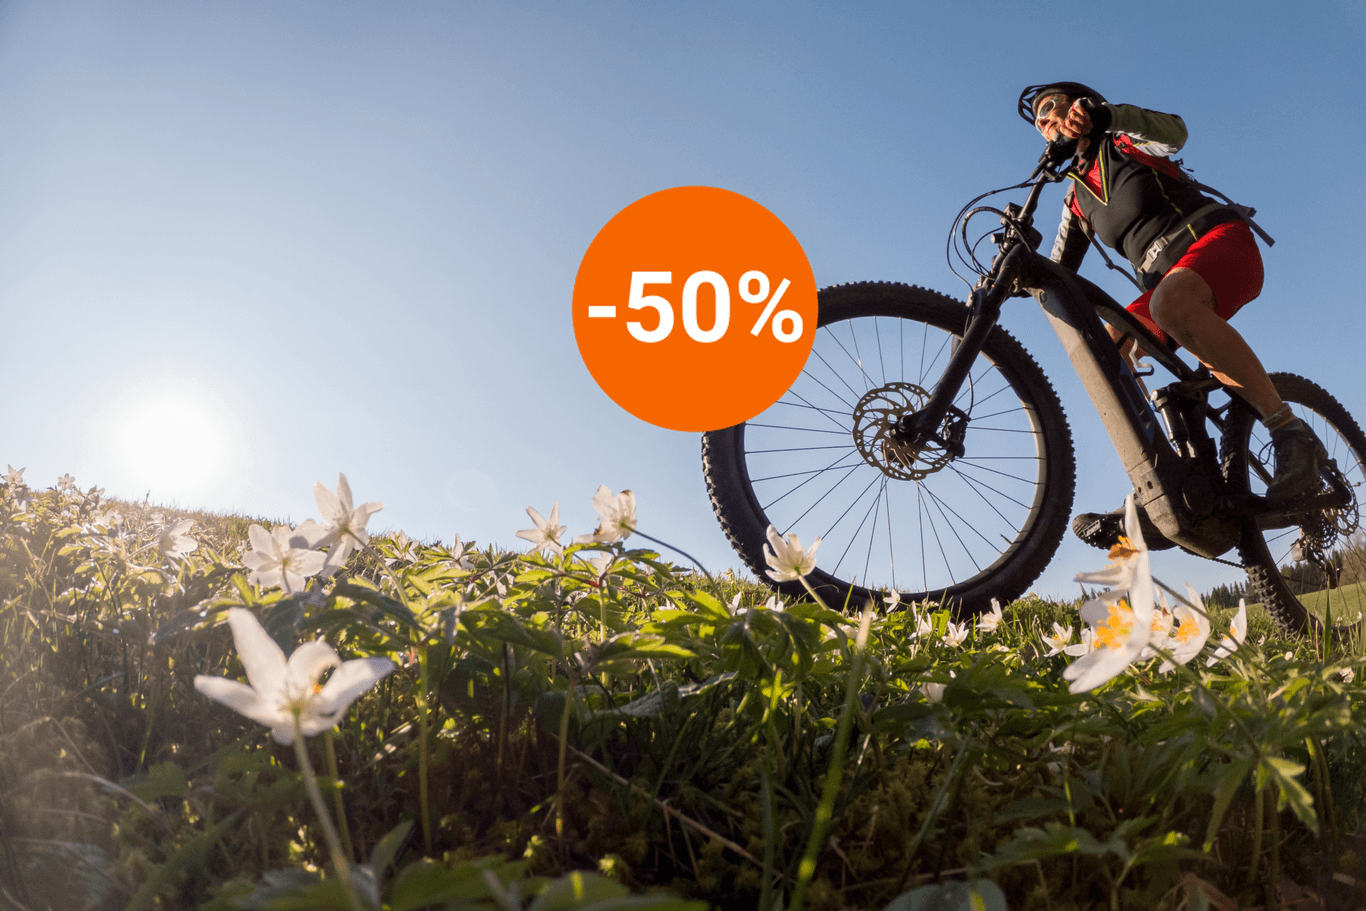 Sichern Sie sich bei Aldi jetzt ein E-Mountainbike der Marke Prophete zum Tiefpreis für weniger als 800 Euro. (Symbolbild)